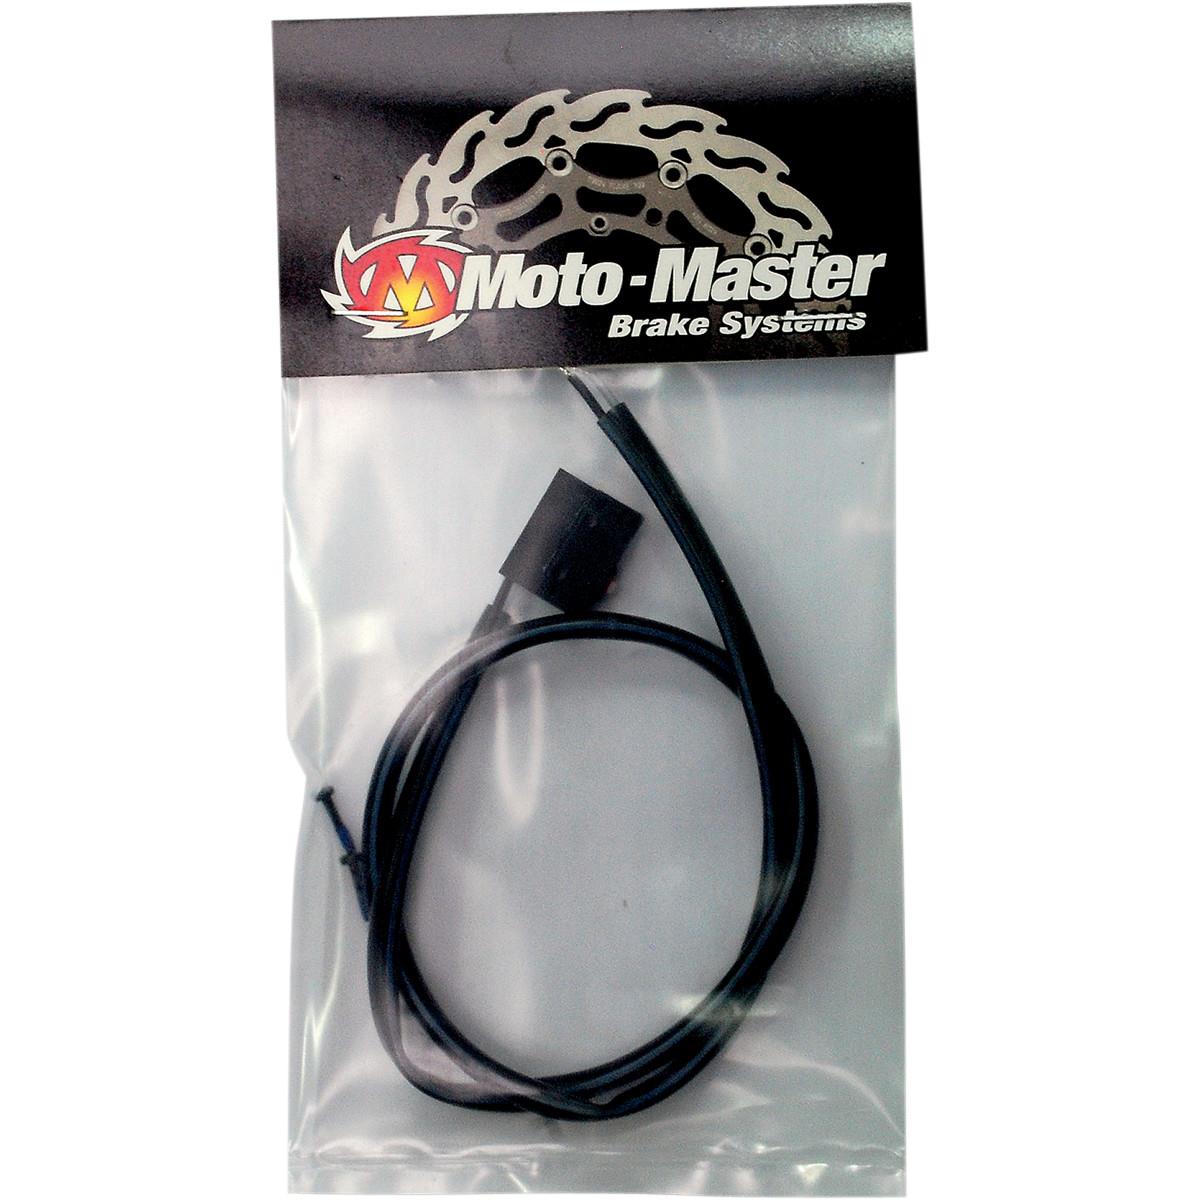 Moto-Master Bremslichtschalter 11 mm/12 mm